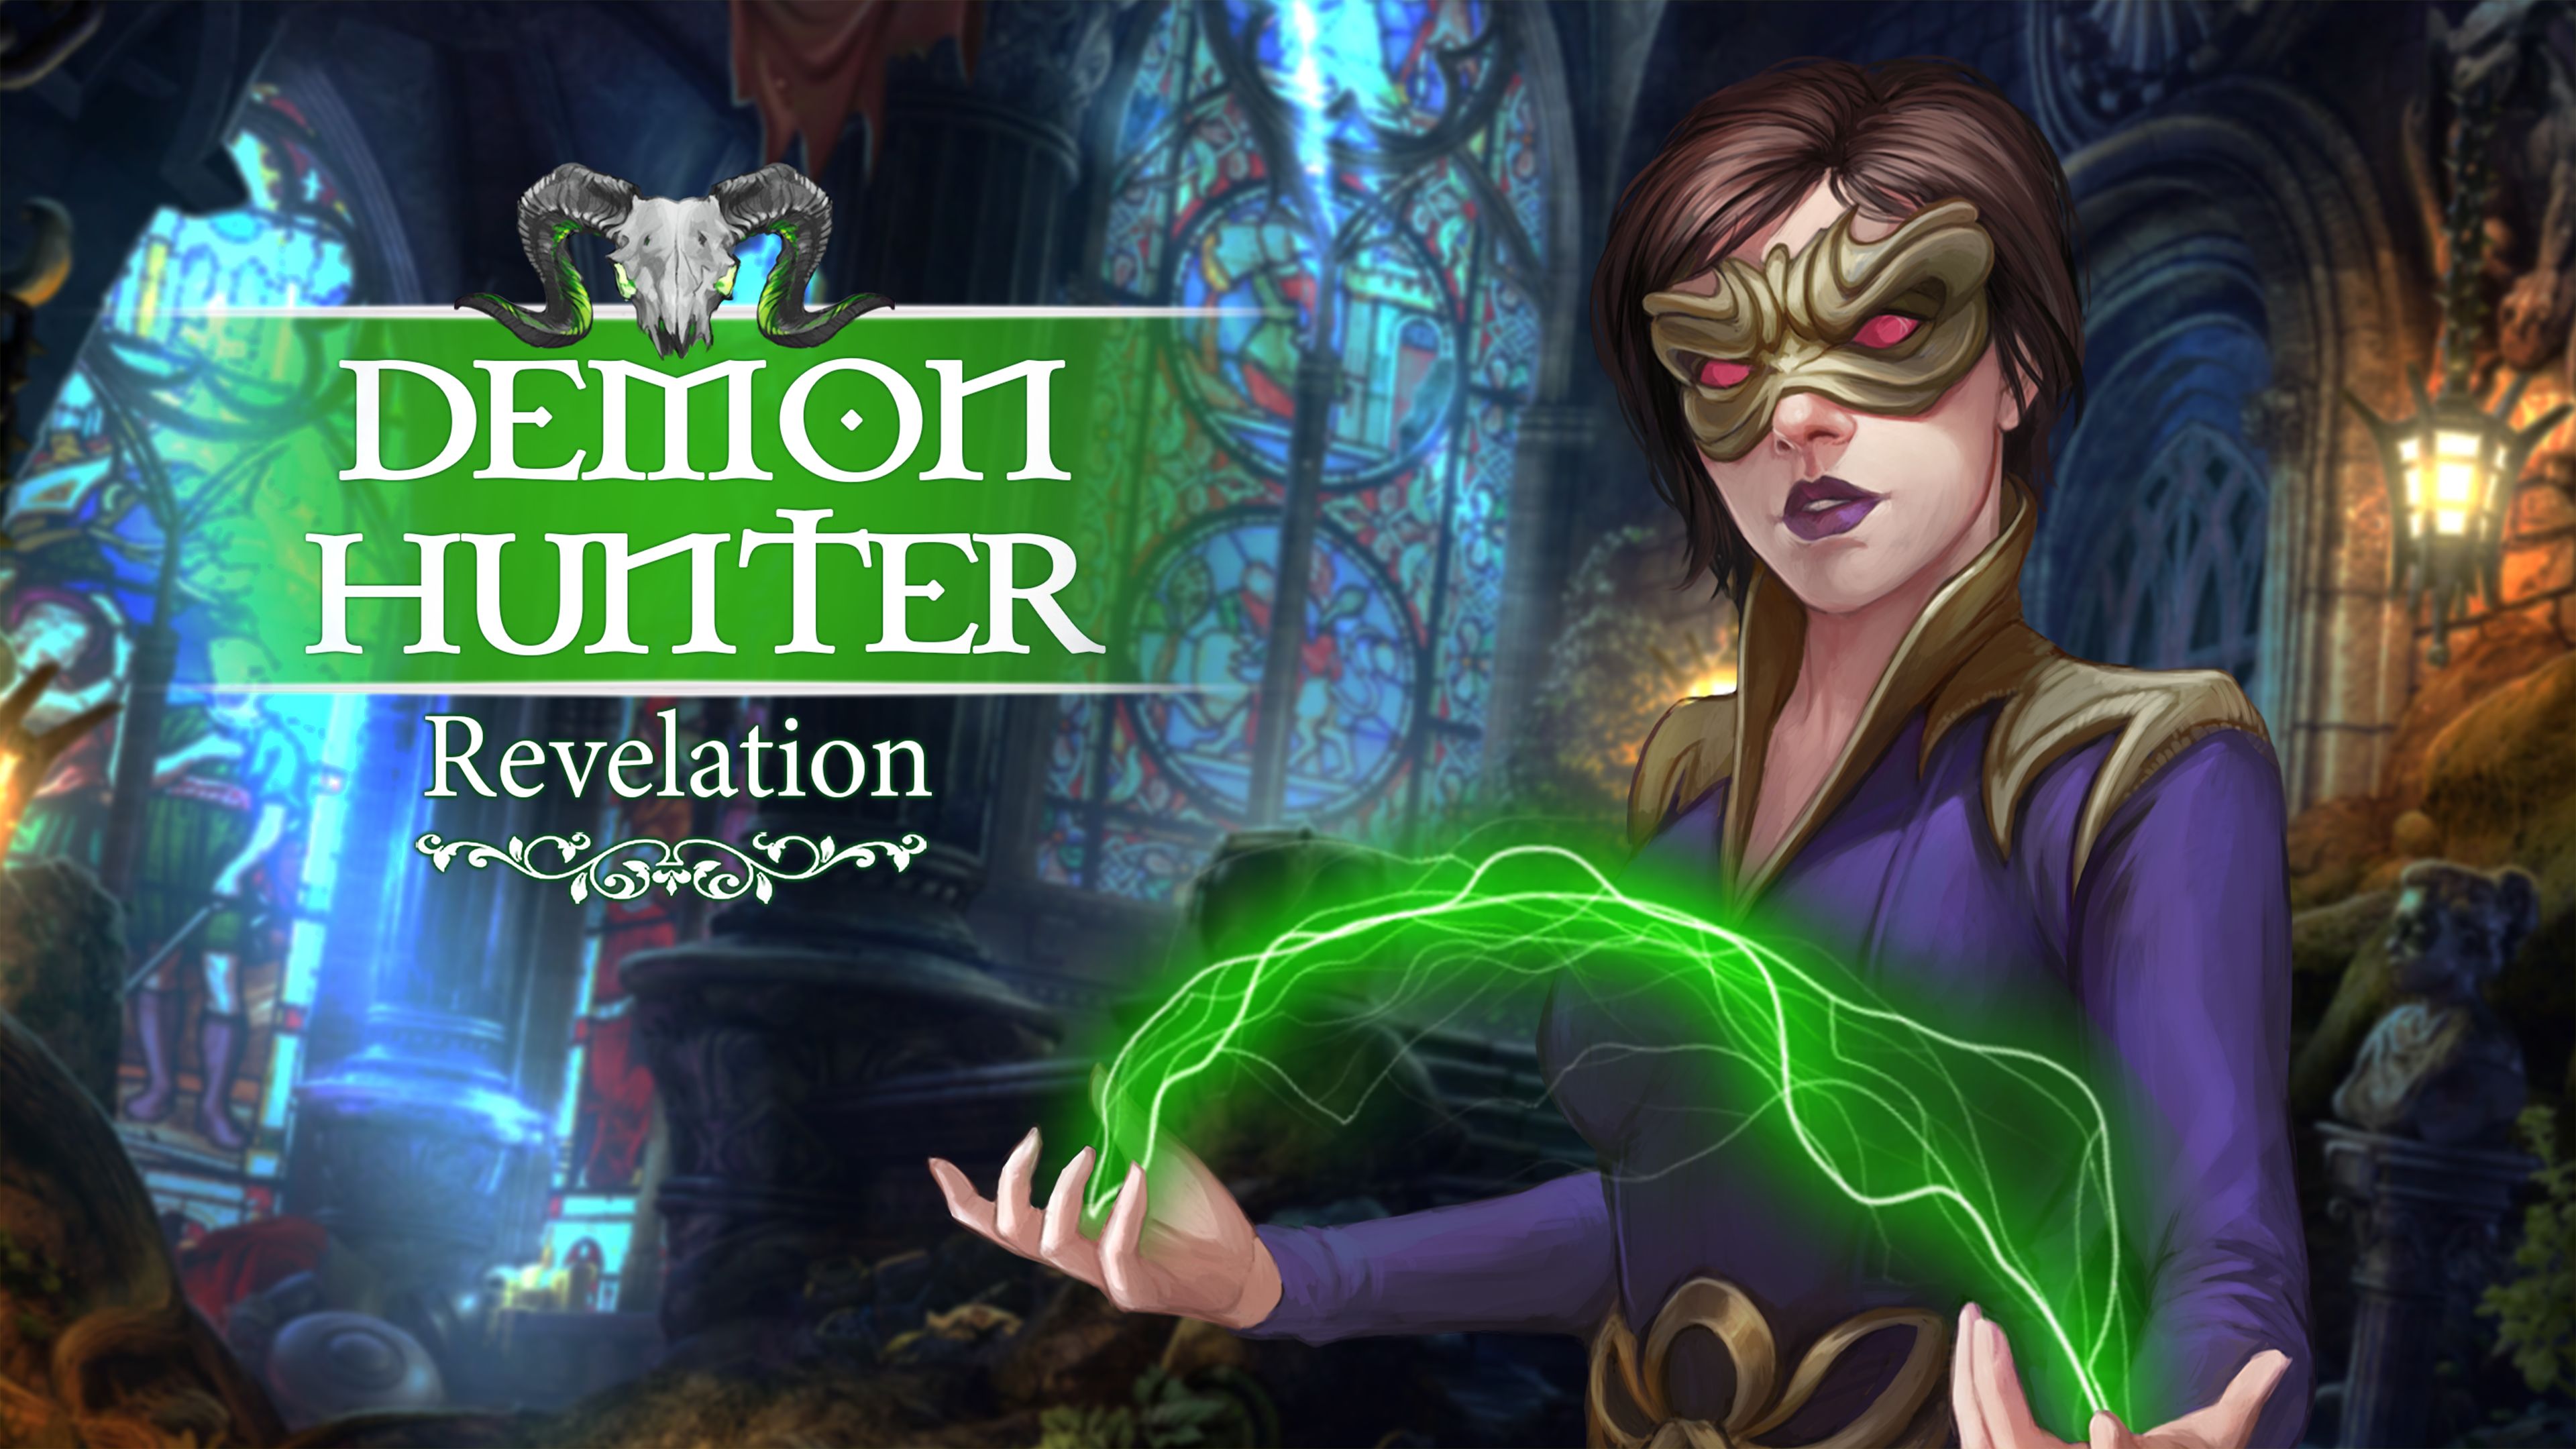 Demon Hunter: Revelation